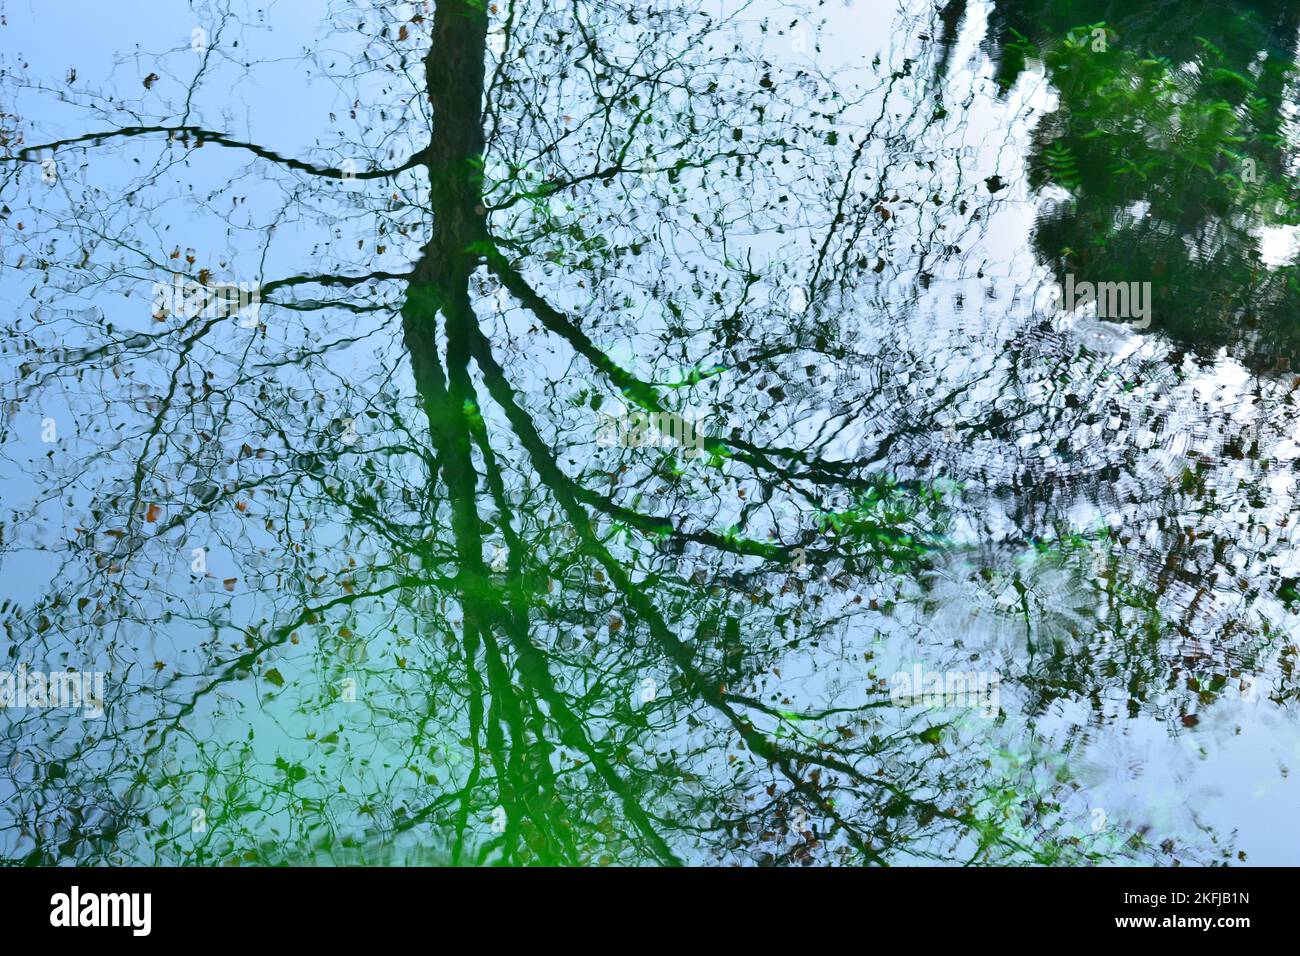 Reflejos de plantas y árboles en el agua de un estanque, acuarela natural Stock Photo